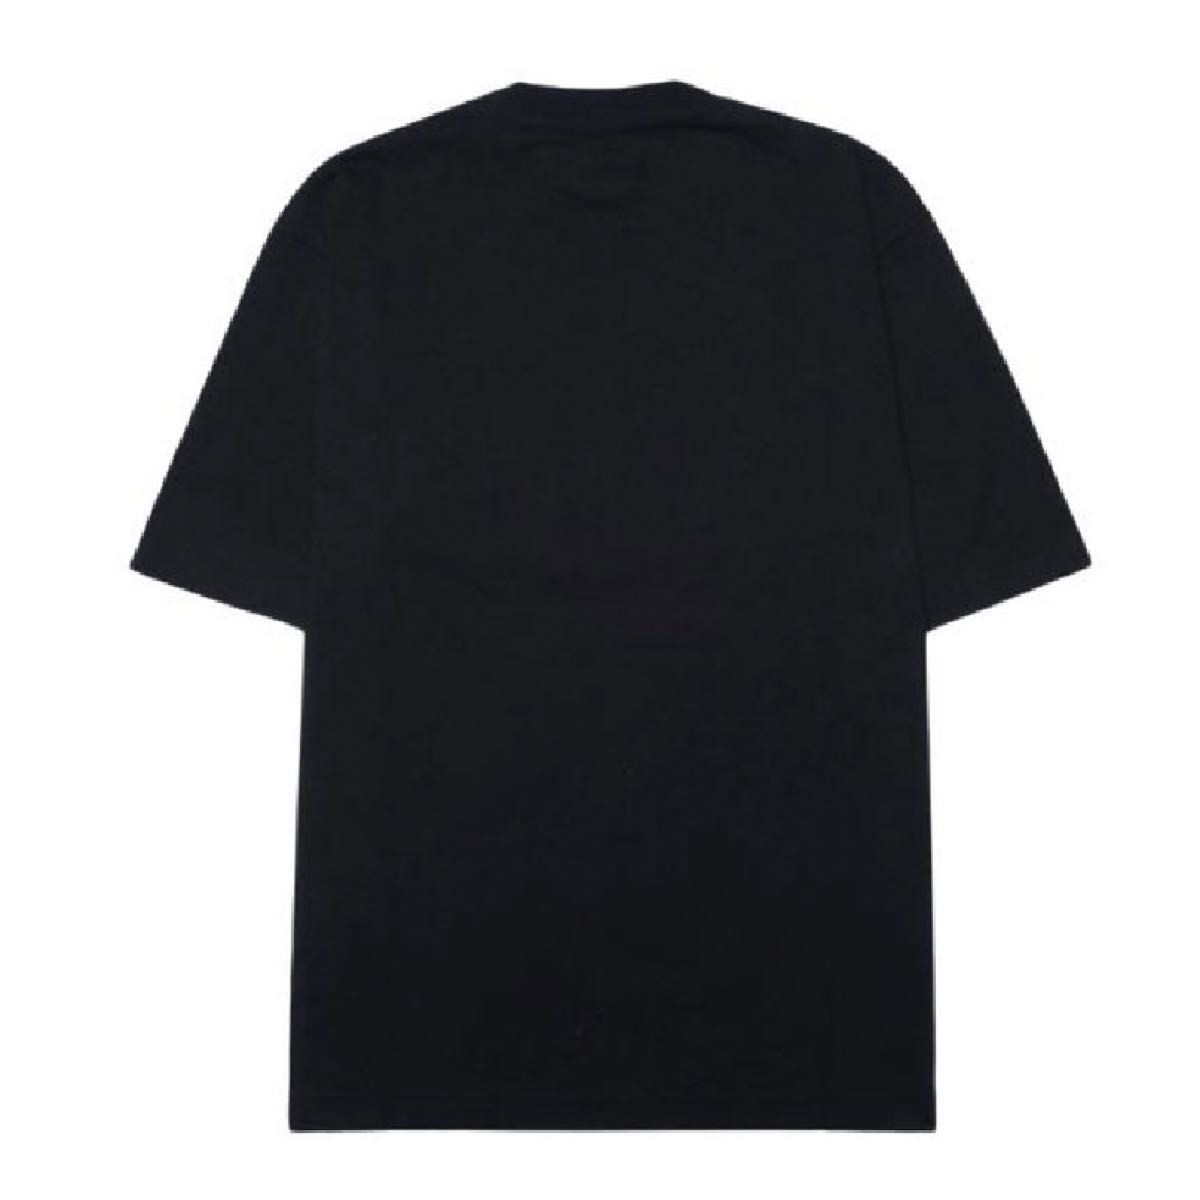 【限定品】ナイキ×トロフィールーム コラボ Tシャツ メンズ Lサイズ 新品 半袖 ブラック